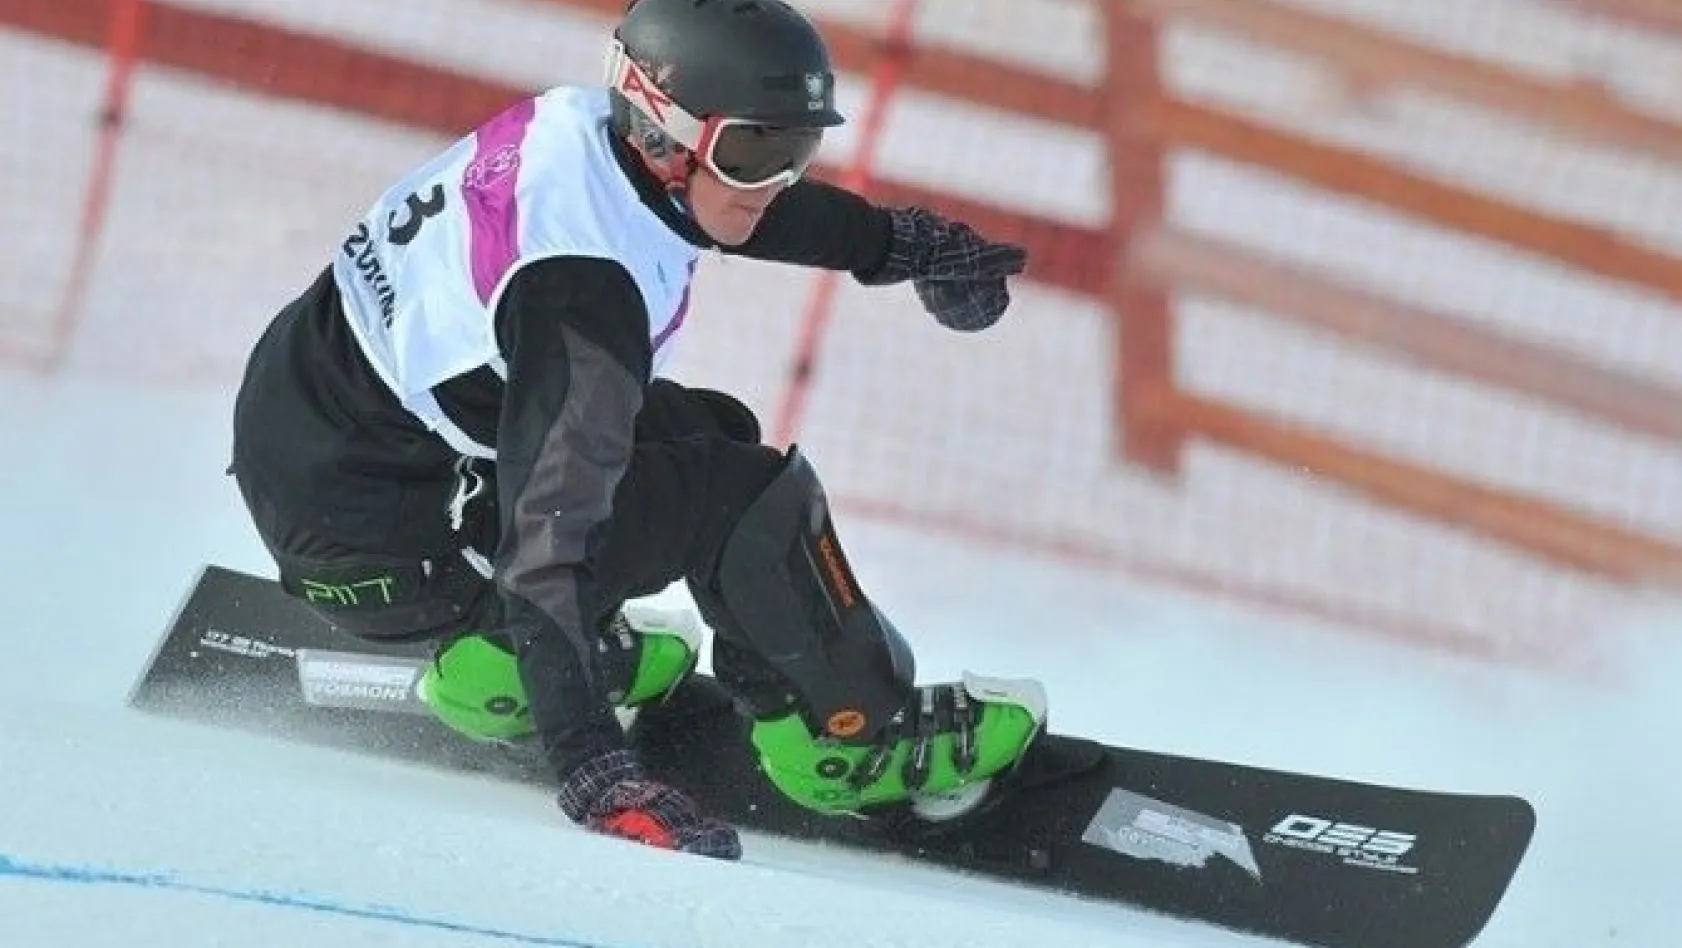 Snowboard Paralel Büyük Slalom final kadrosu belli oldu
